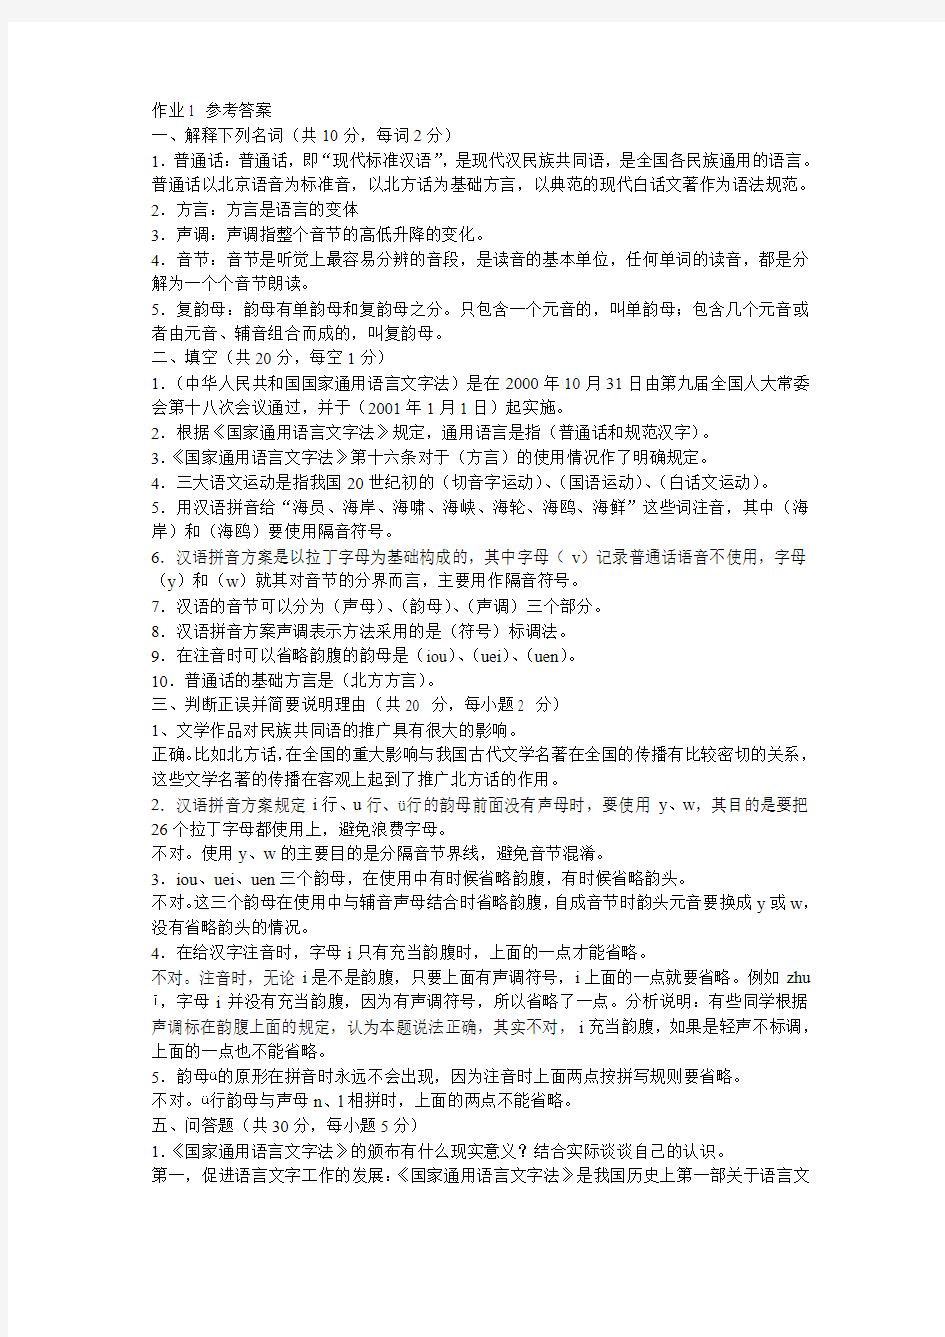 电大汉语言文学专业汉语专题(1)平时作业答案